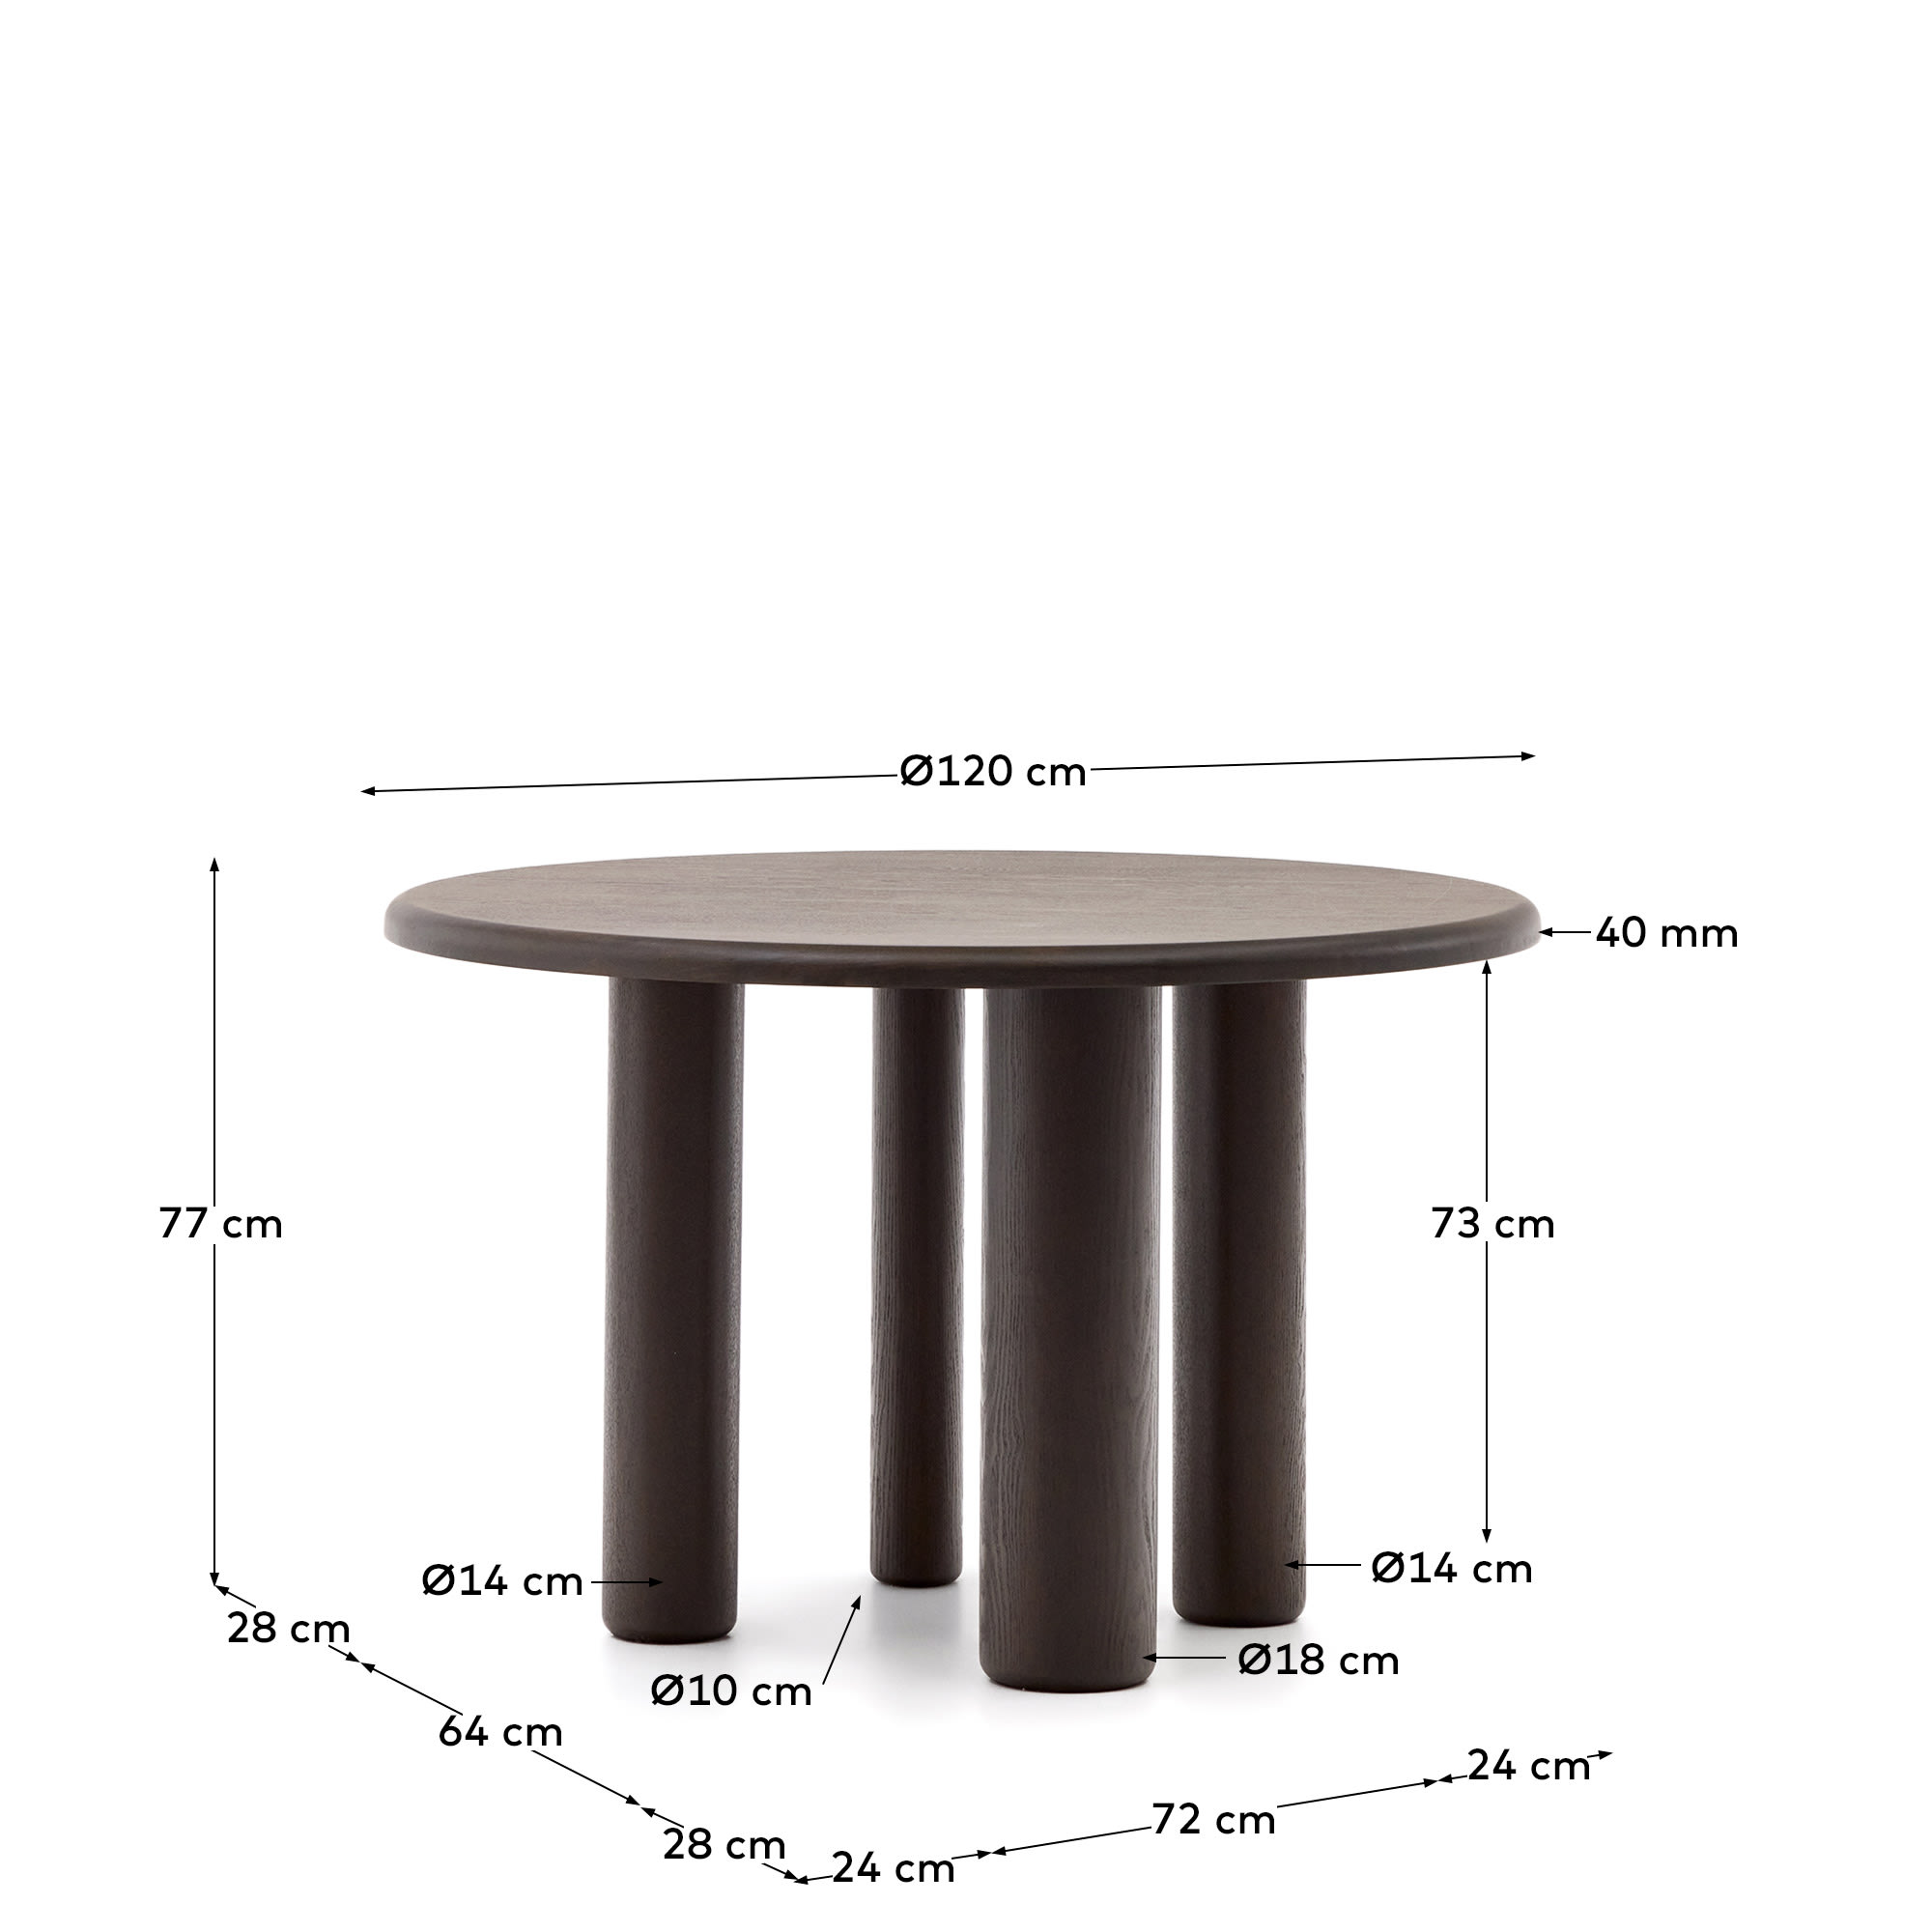 마일렌 정원형 애쉬나무 다크 무늬목 테이블 Ø 120 cm - 크기